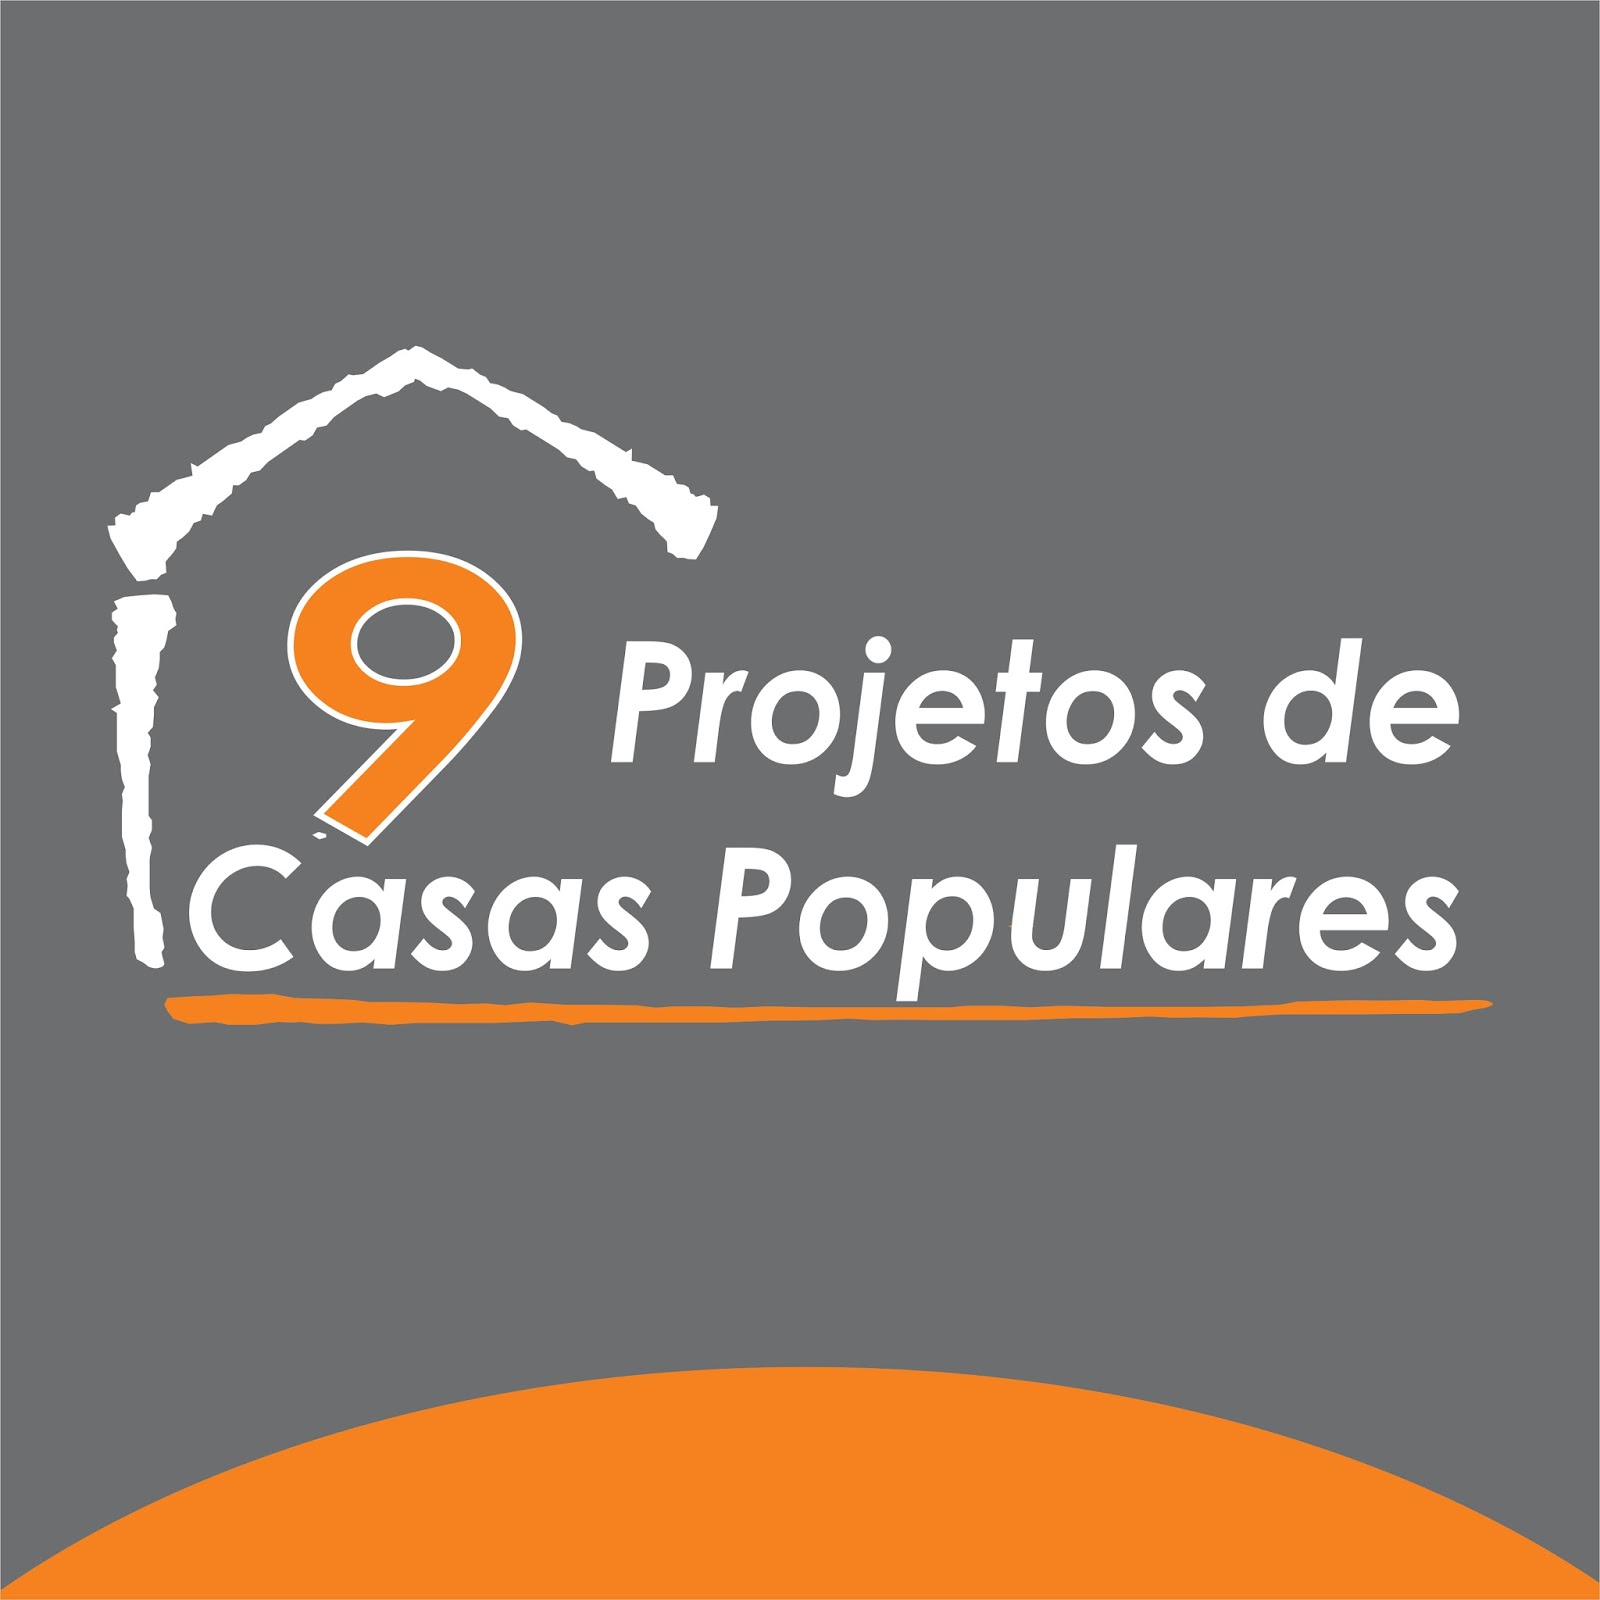 projetos de casas populares - Soprojetos Popular Plantas de casas Projetos de casas